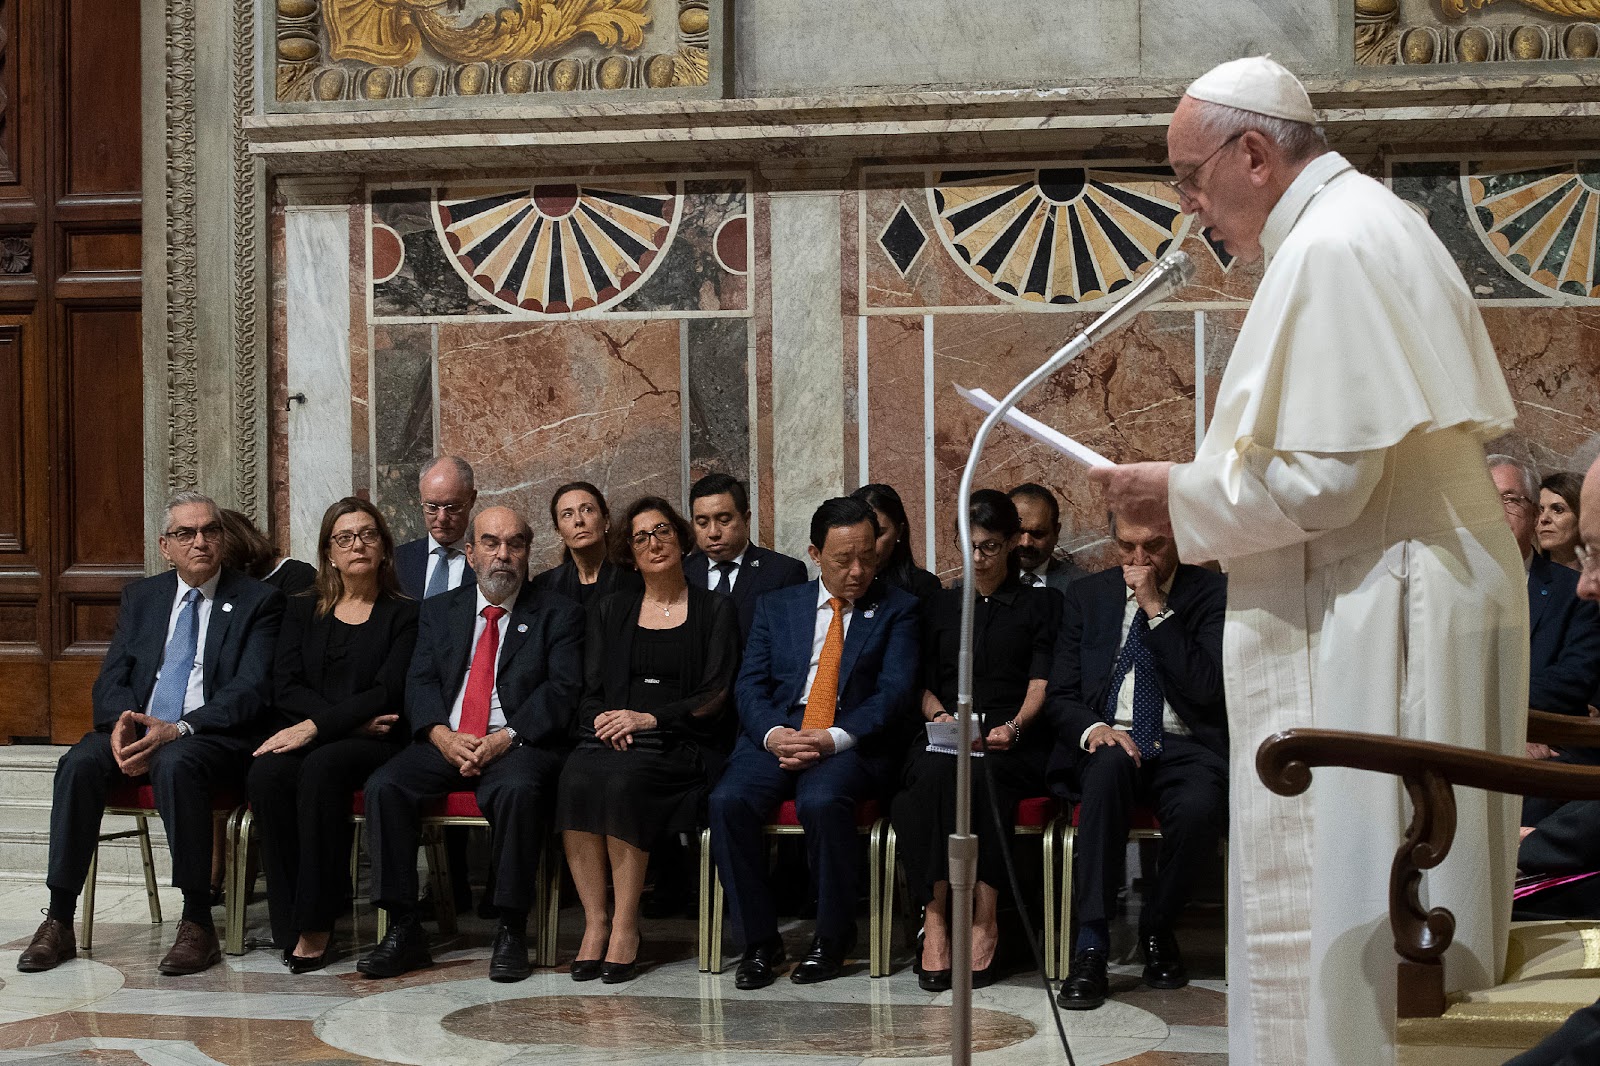 Đức Thánh Cha phát biểu trước FAO: Chúng tôi ủng hộ nỗ lực toàn cầu để chấm dứt nạn đói trên thế giới